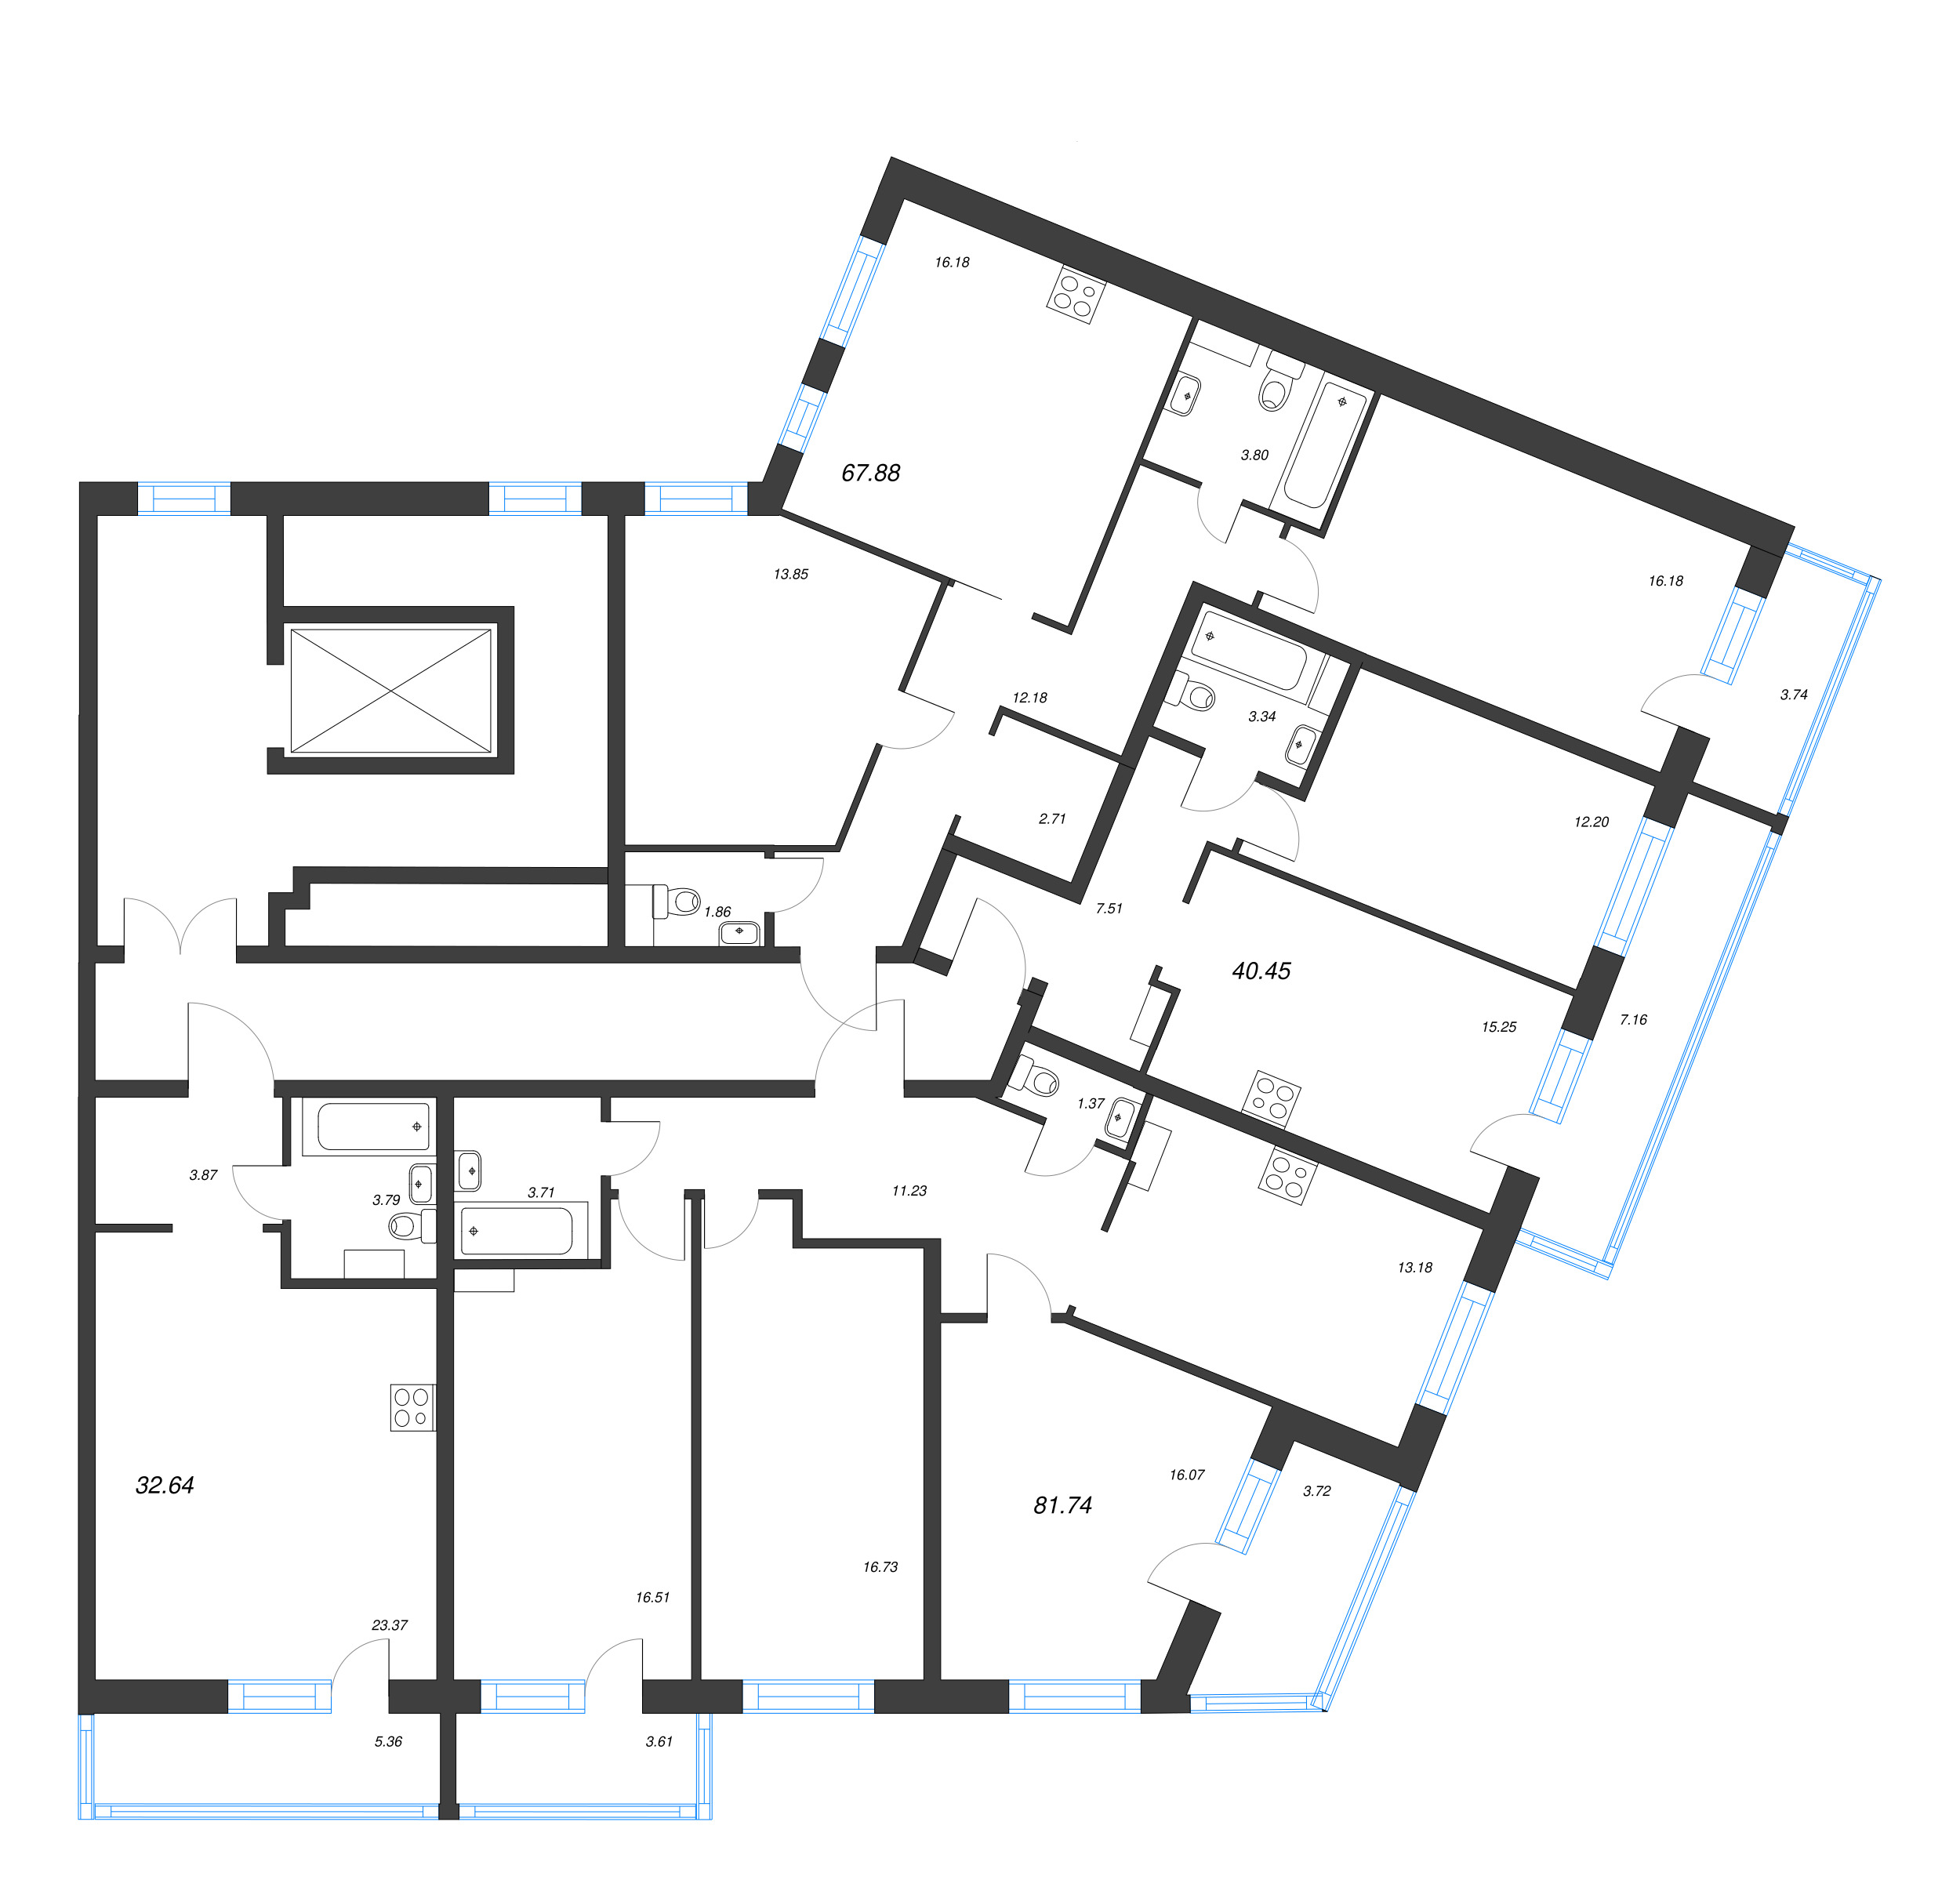 3-комнатная (Евро) квартира, 67.88 м² в ЖК "Невский берег" - планировка этажа